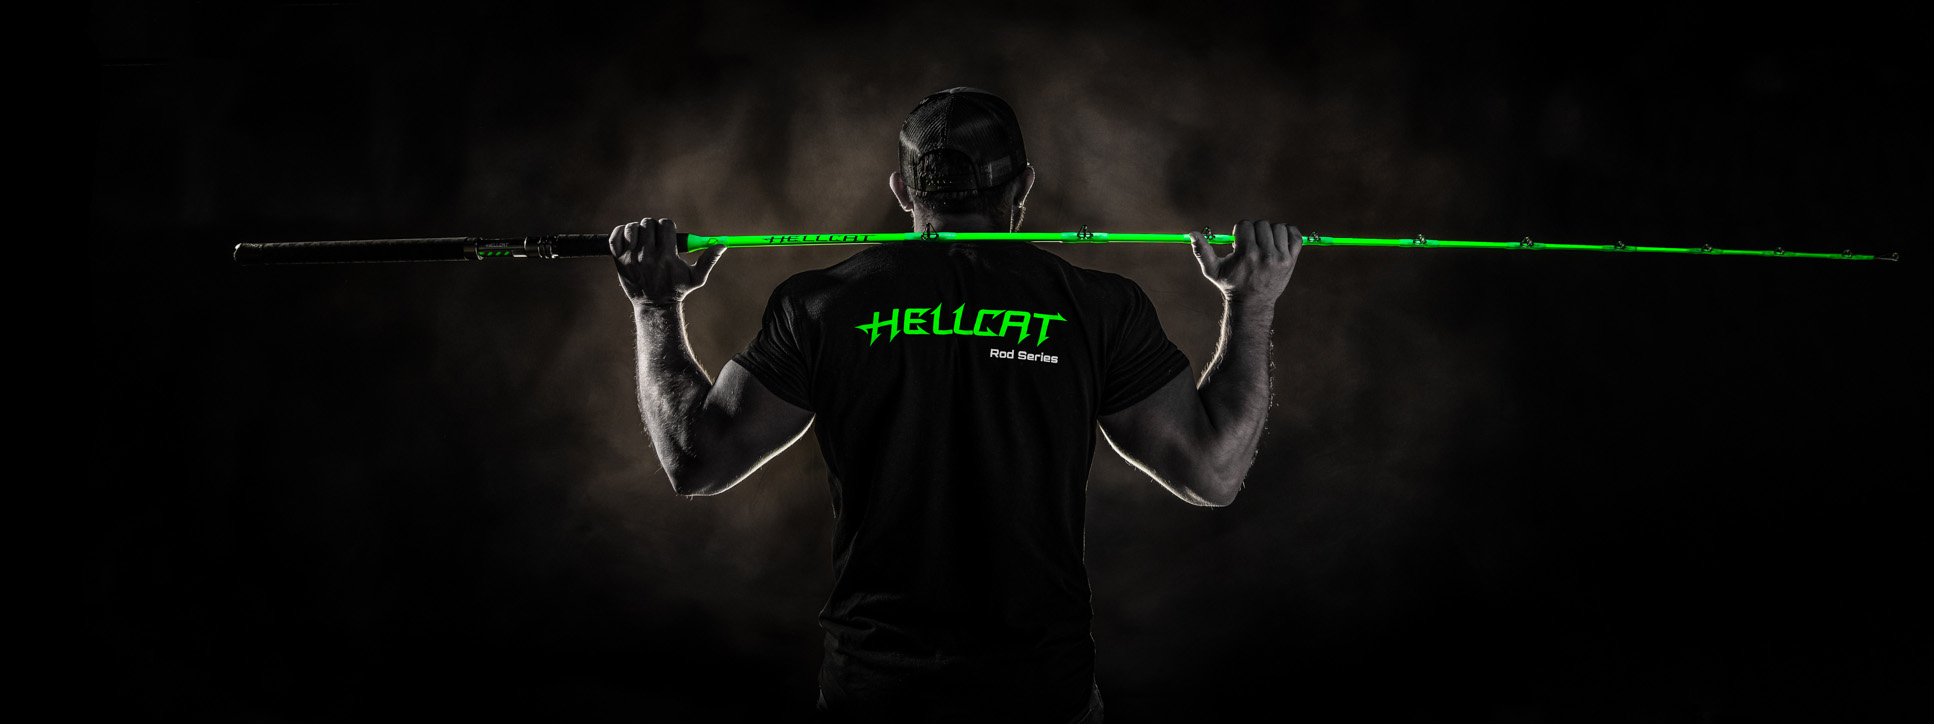 hellcat rod green｜TikTok Search